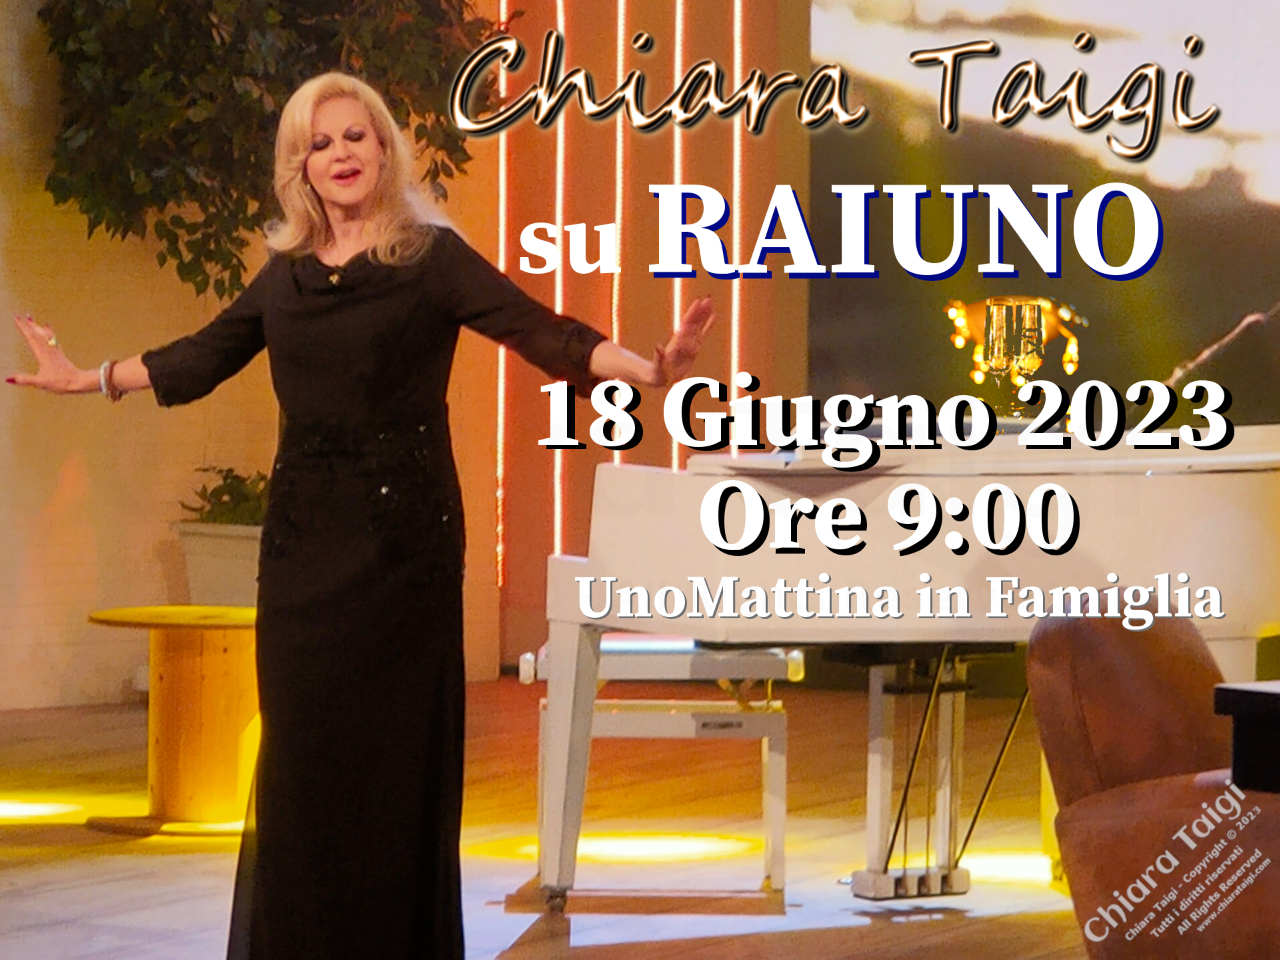 CHIARA TAIGI su RAIUNO Domenica 18 Giugno 2023 ore 9:00 - Appuntamento a Uno Mattina in Famiglia!